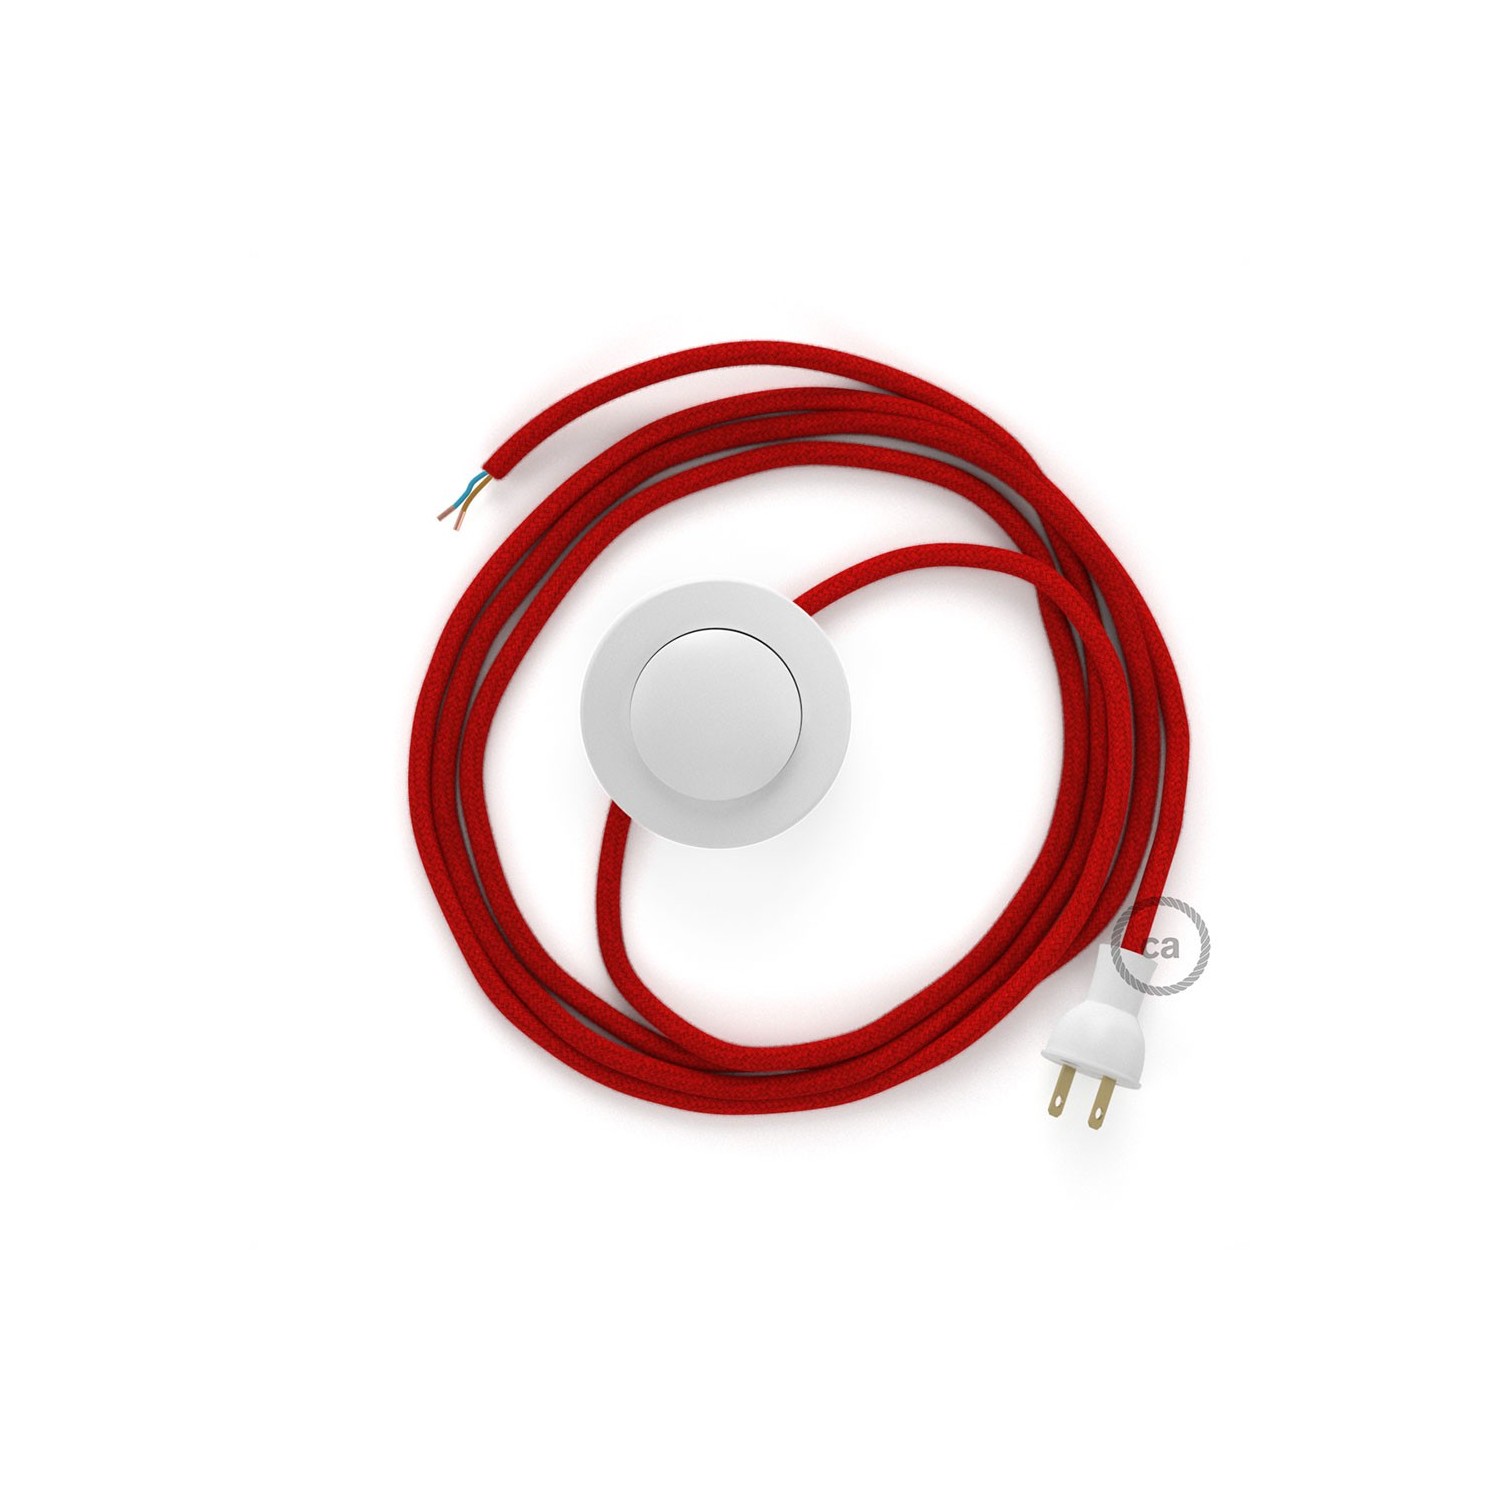 Cableado para lámpara de piso, cable RC35 Algodón Rojo Fuego 3 m. Elige tu el color de la clavija y del interruptor!